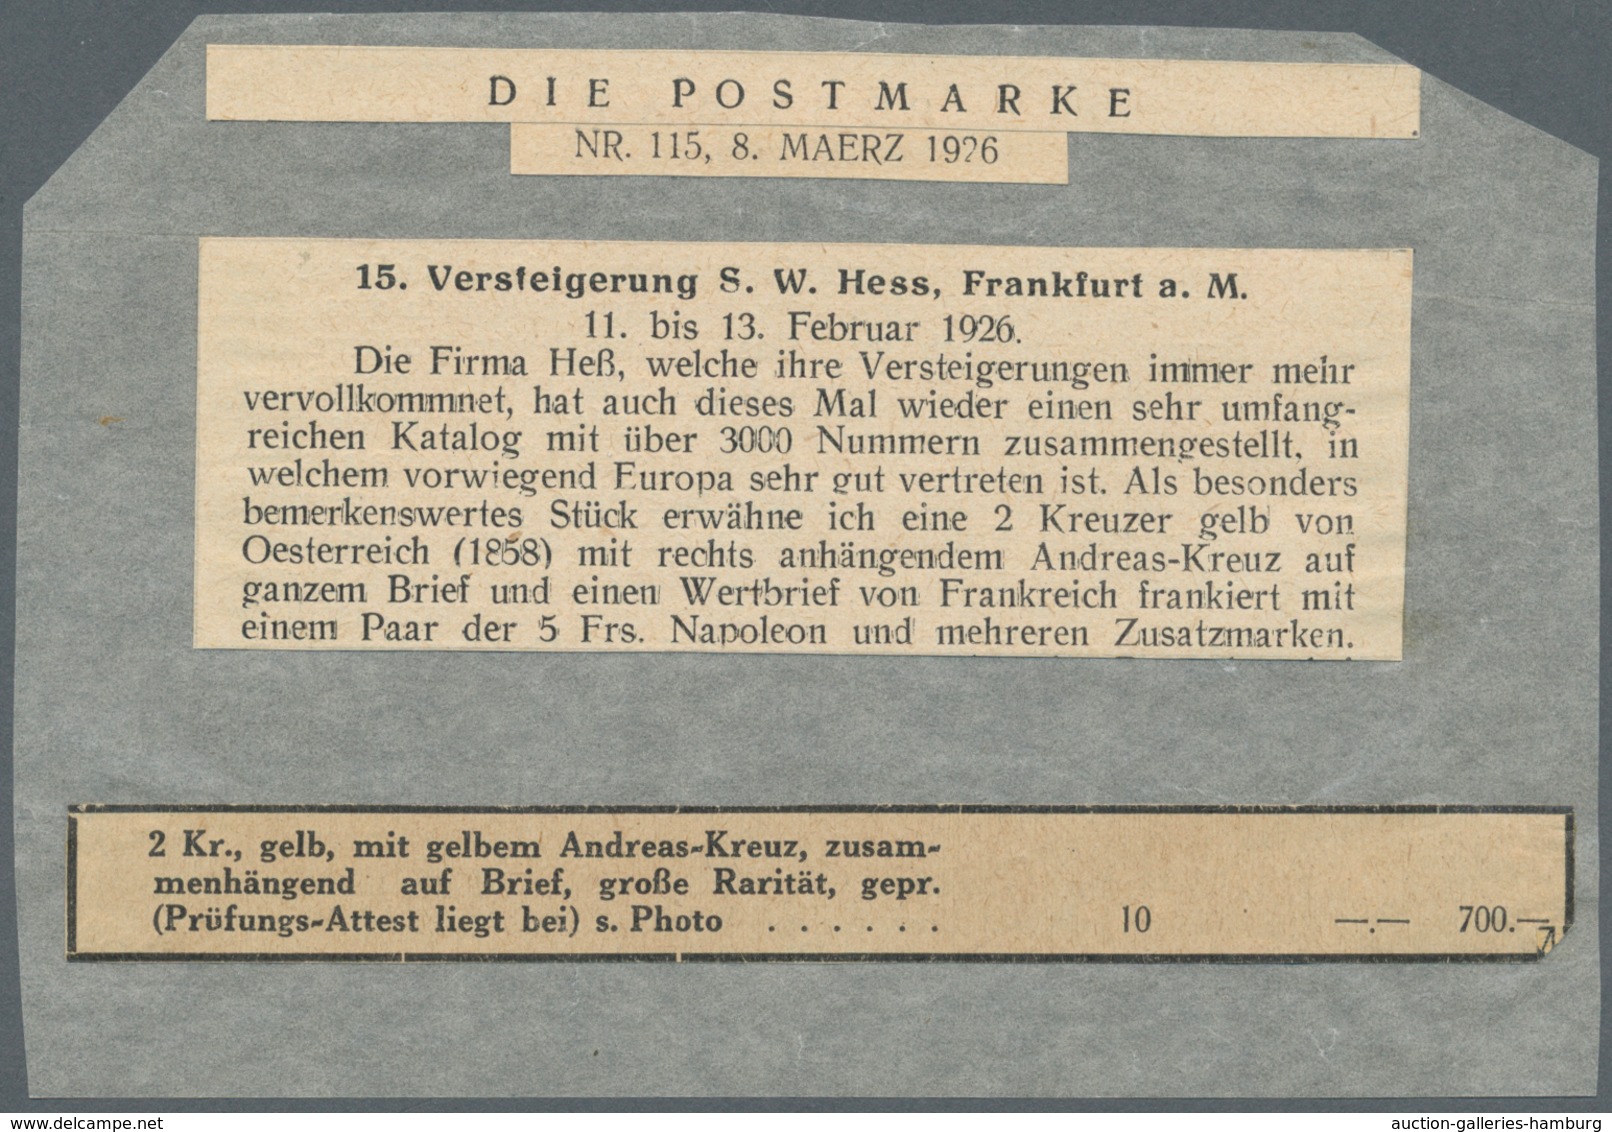 Österreich: 1858/59: 2 Kreuzer Gelb, Type II, Mit Kleinem Gelben Andreas-Kreuz Auf Kompletter Drucks - Ungebraucht